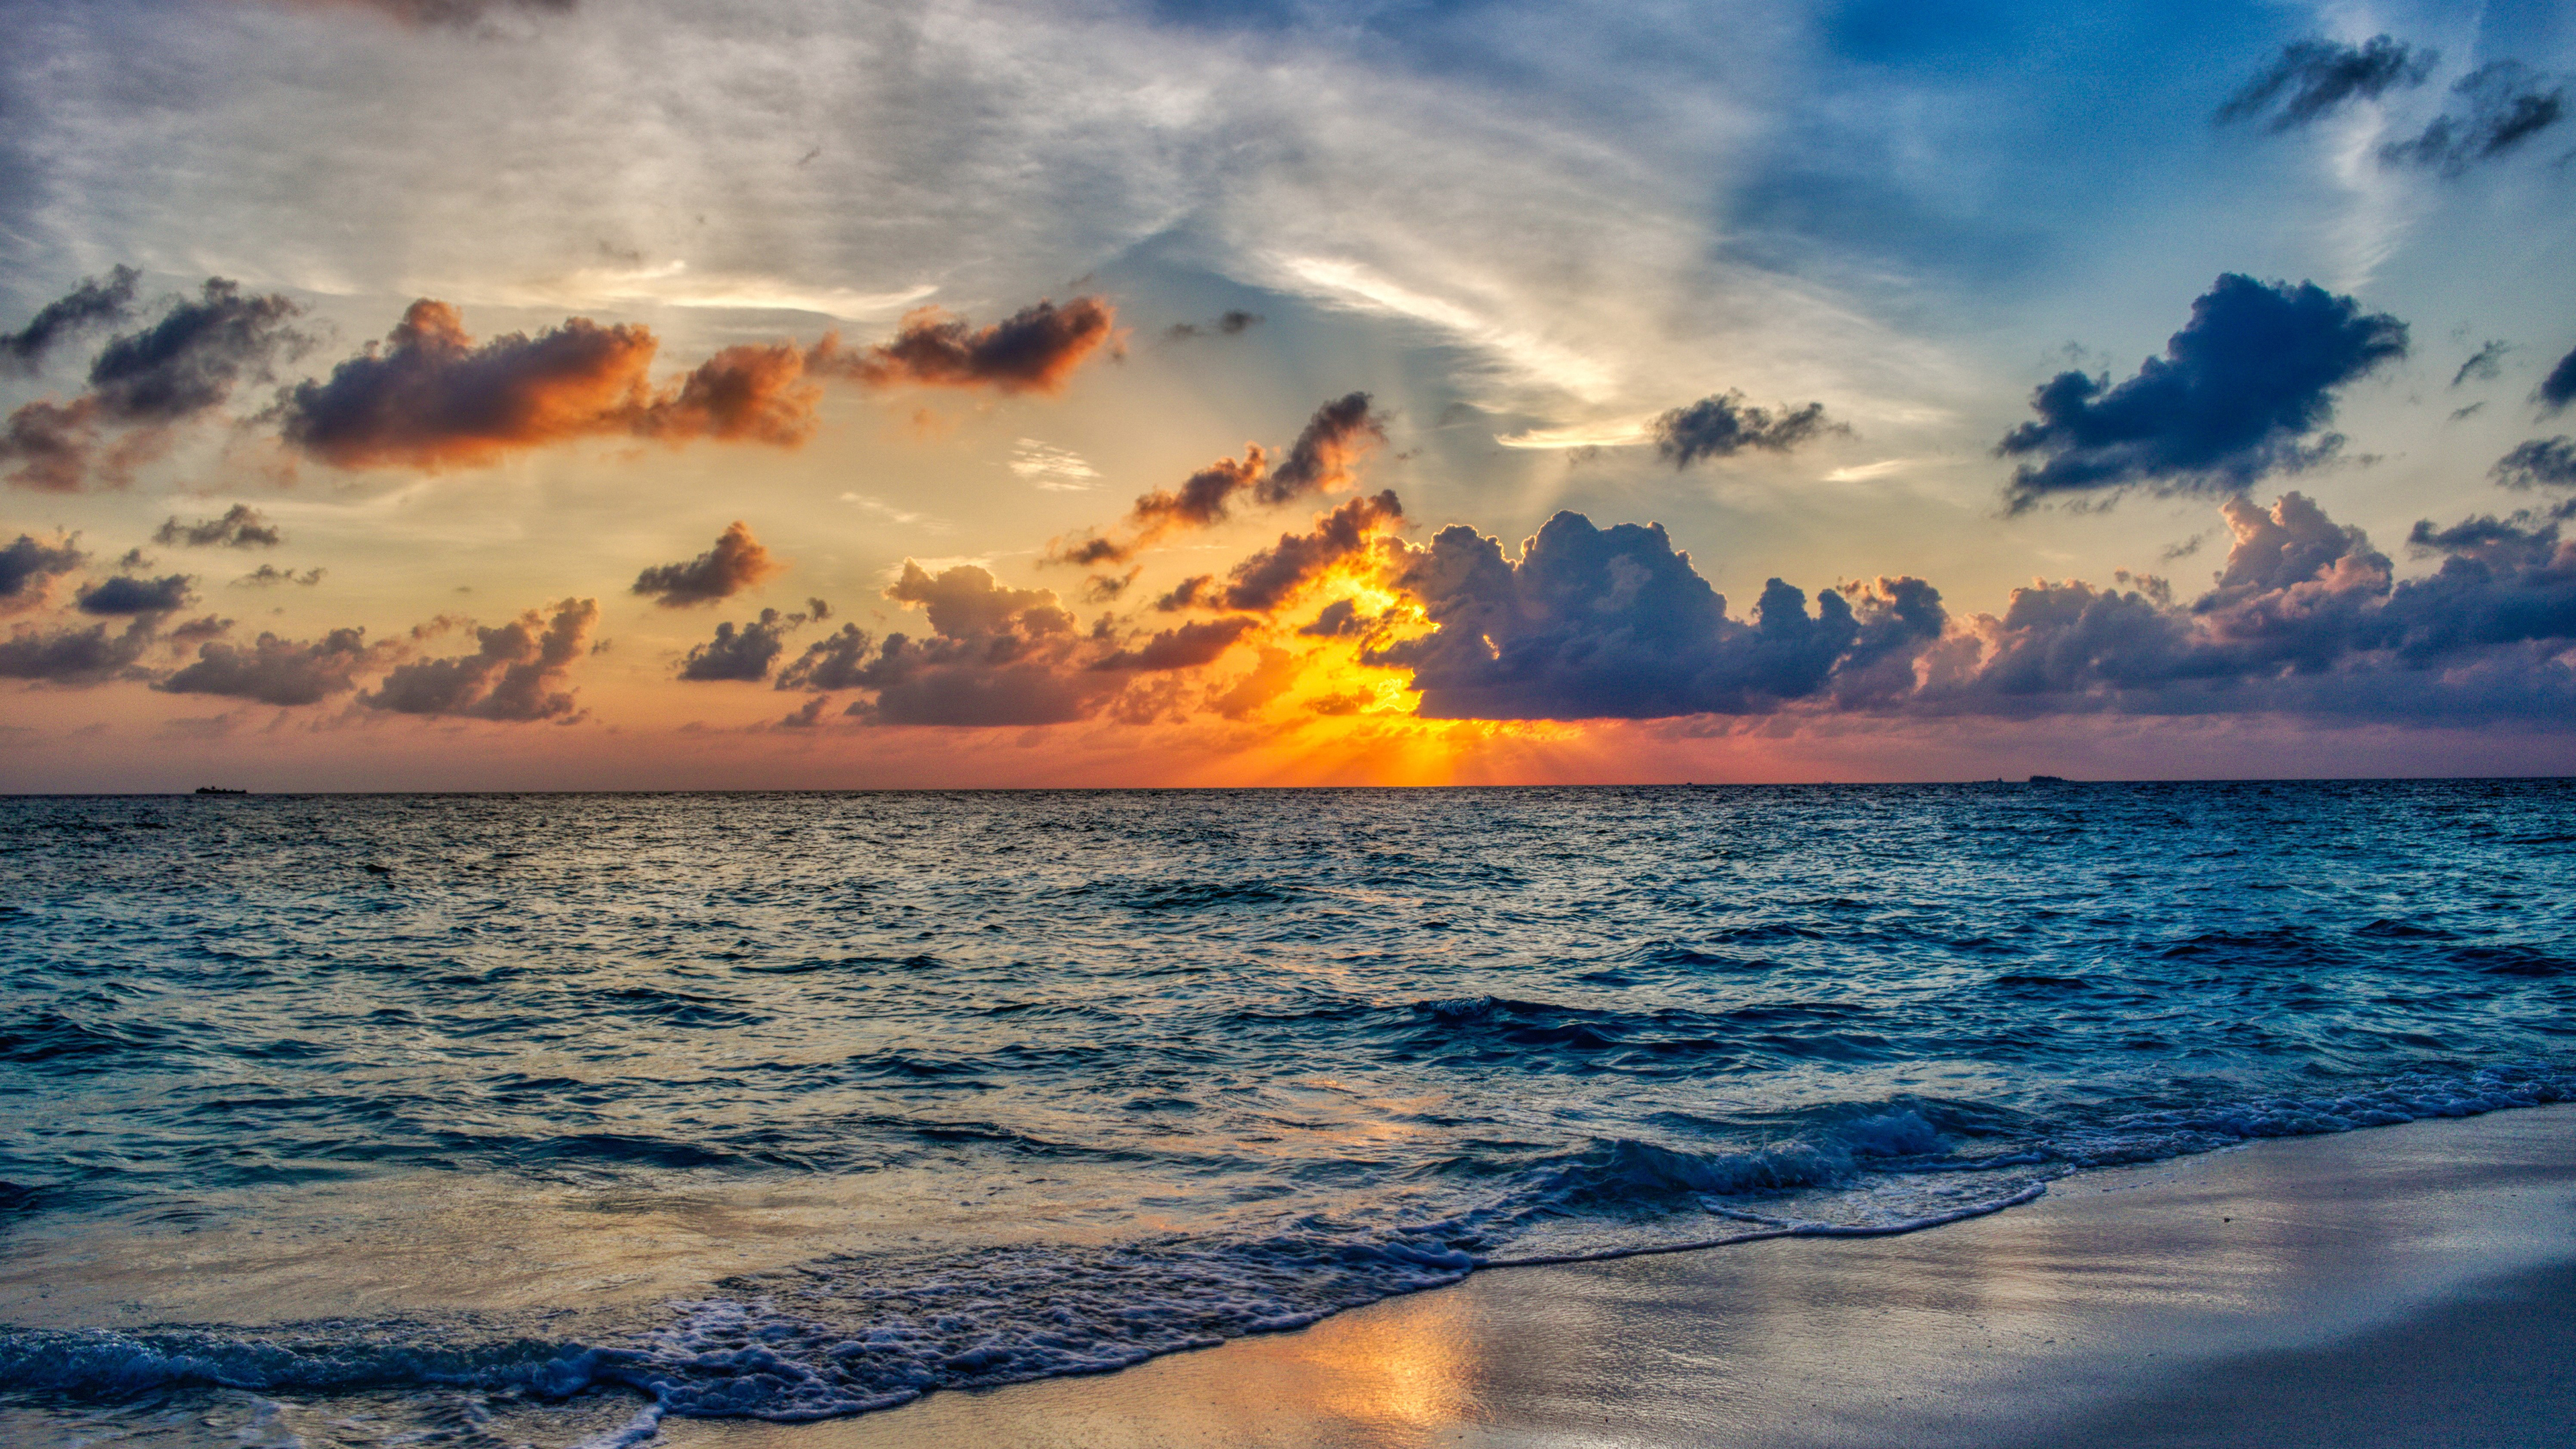 Скачать обои бесплатно Облака, Пляж, Горизонт, Земля/природа, Закат Солнца картинка на рабочий стол ПК